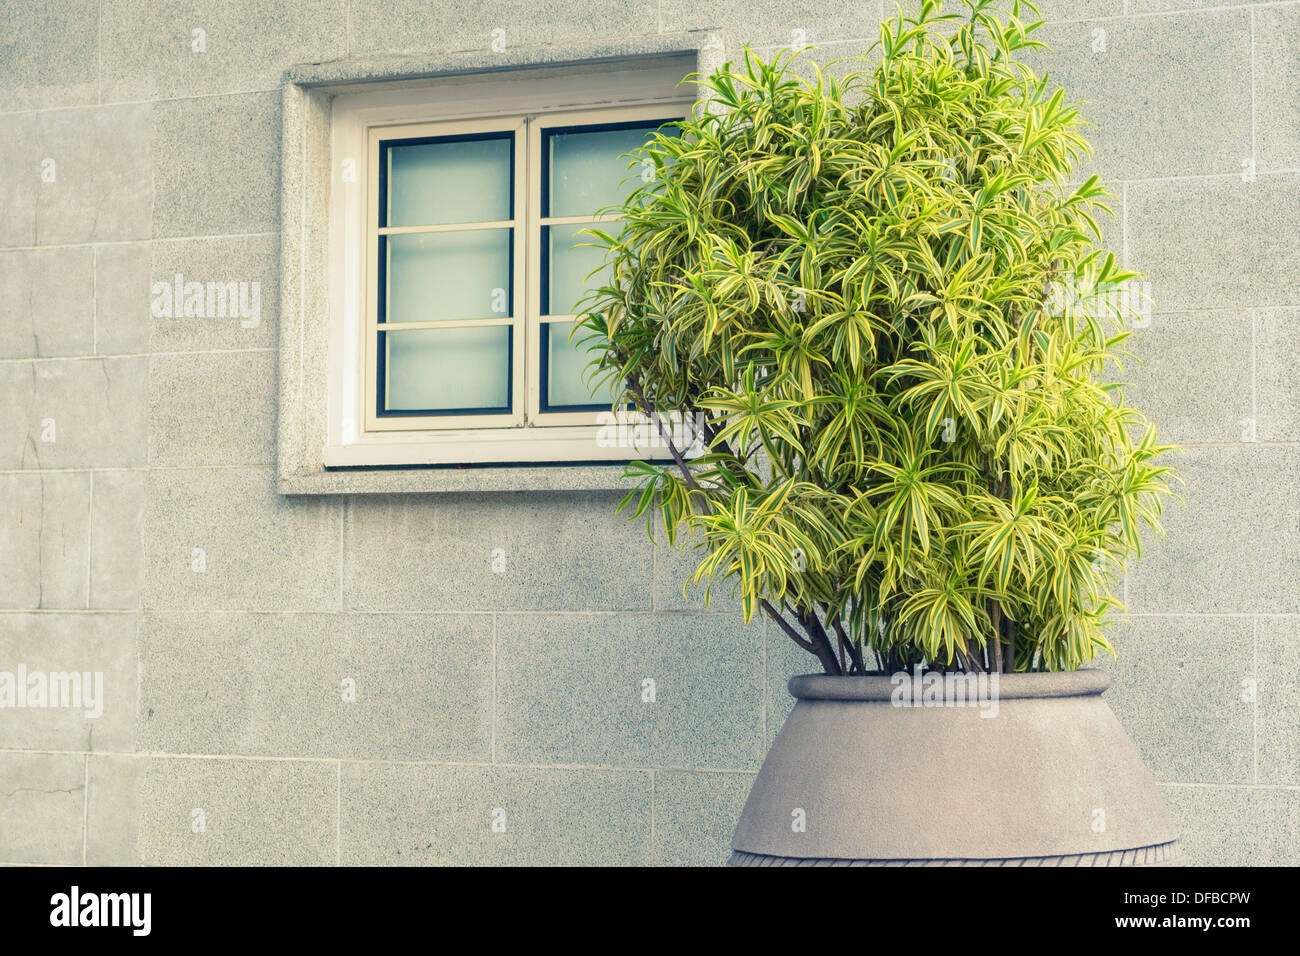 frische grüne Pflanze in großen Blumentopf mit grauen Stadt Wand Hintergrund Stockfoto